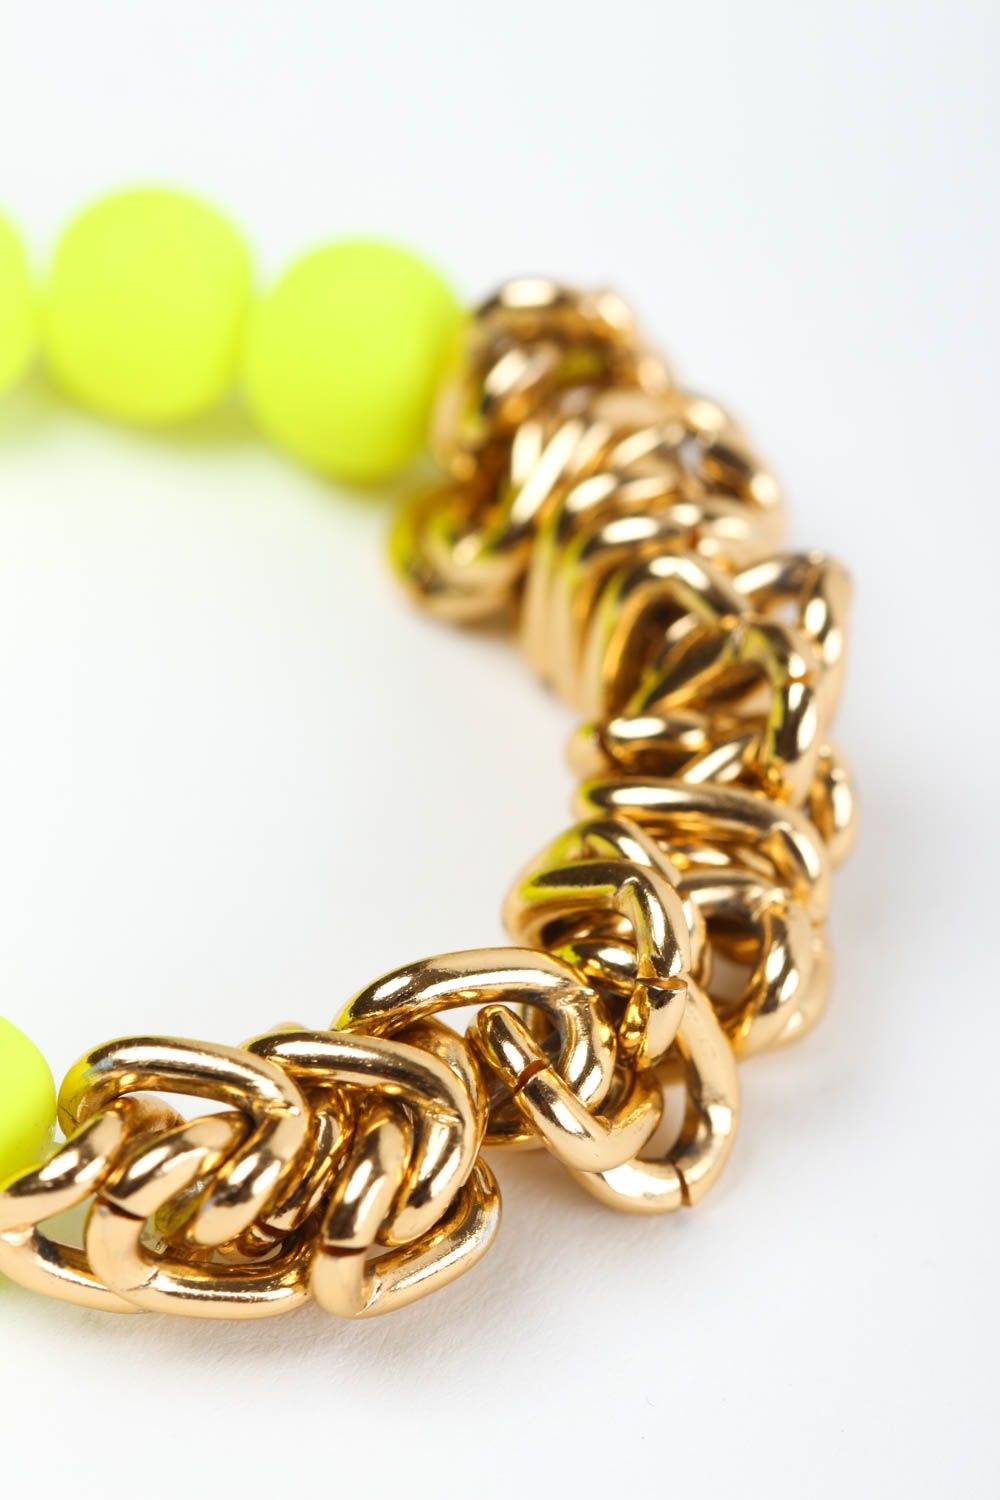 Handmade bracelet designer bracelet unusual accessory for girls gift ideas photo 5